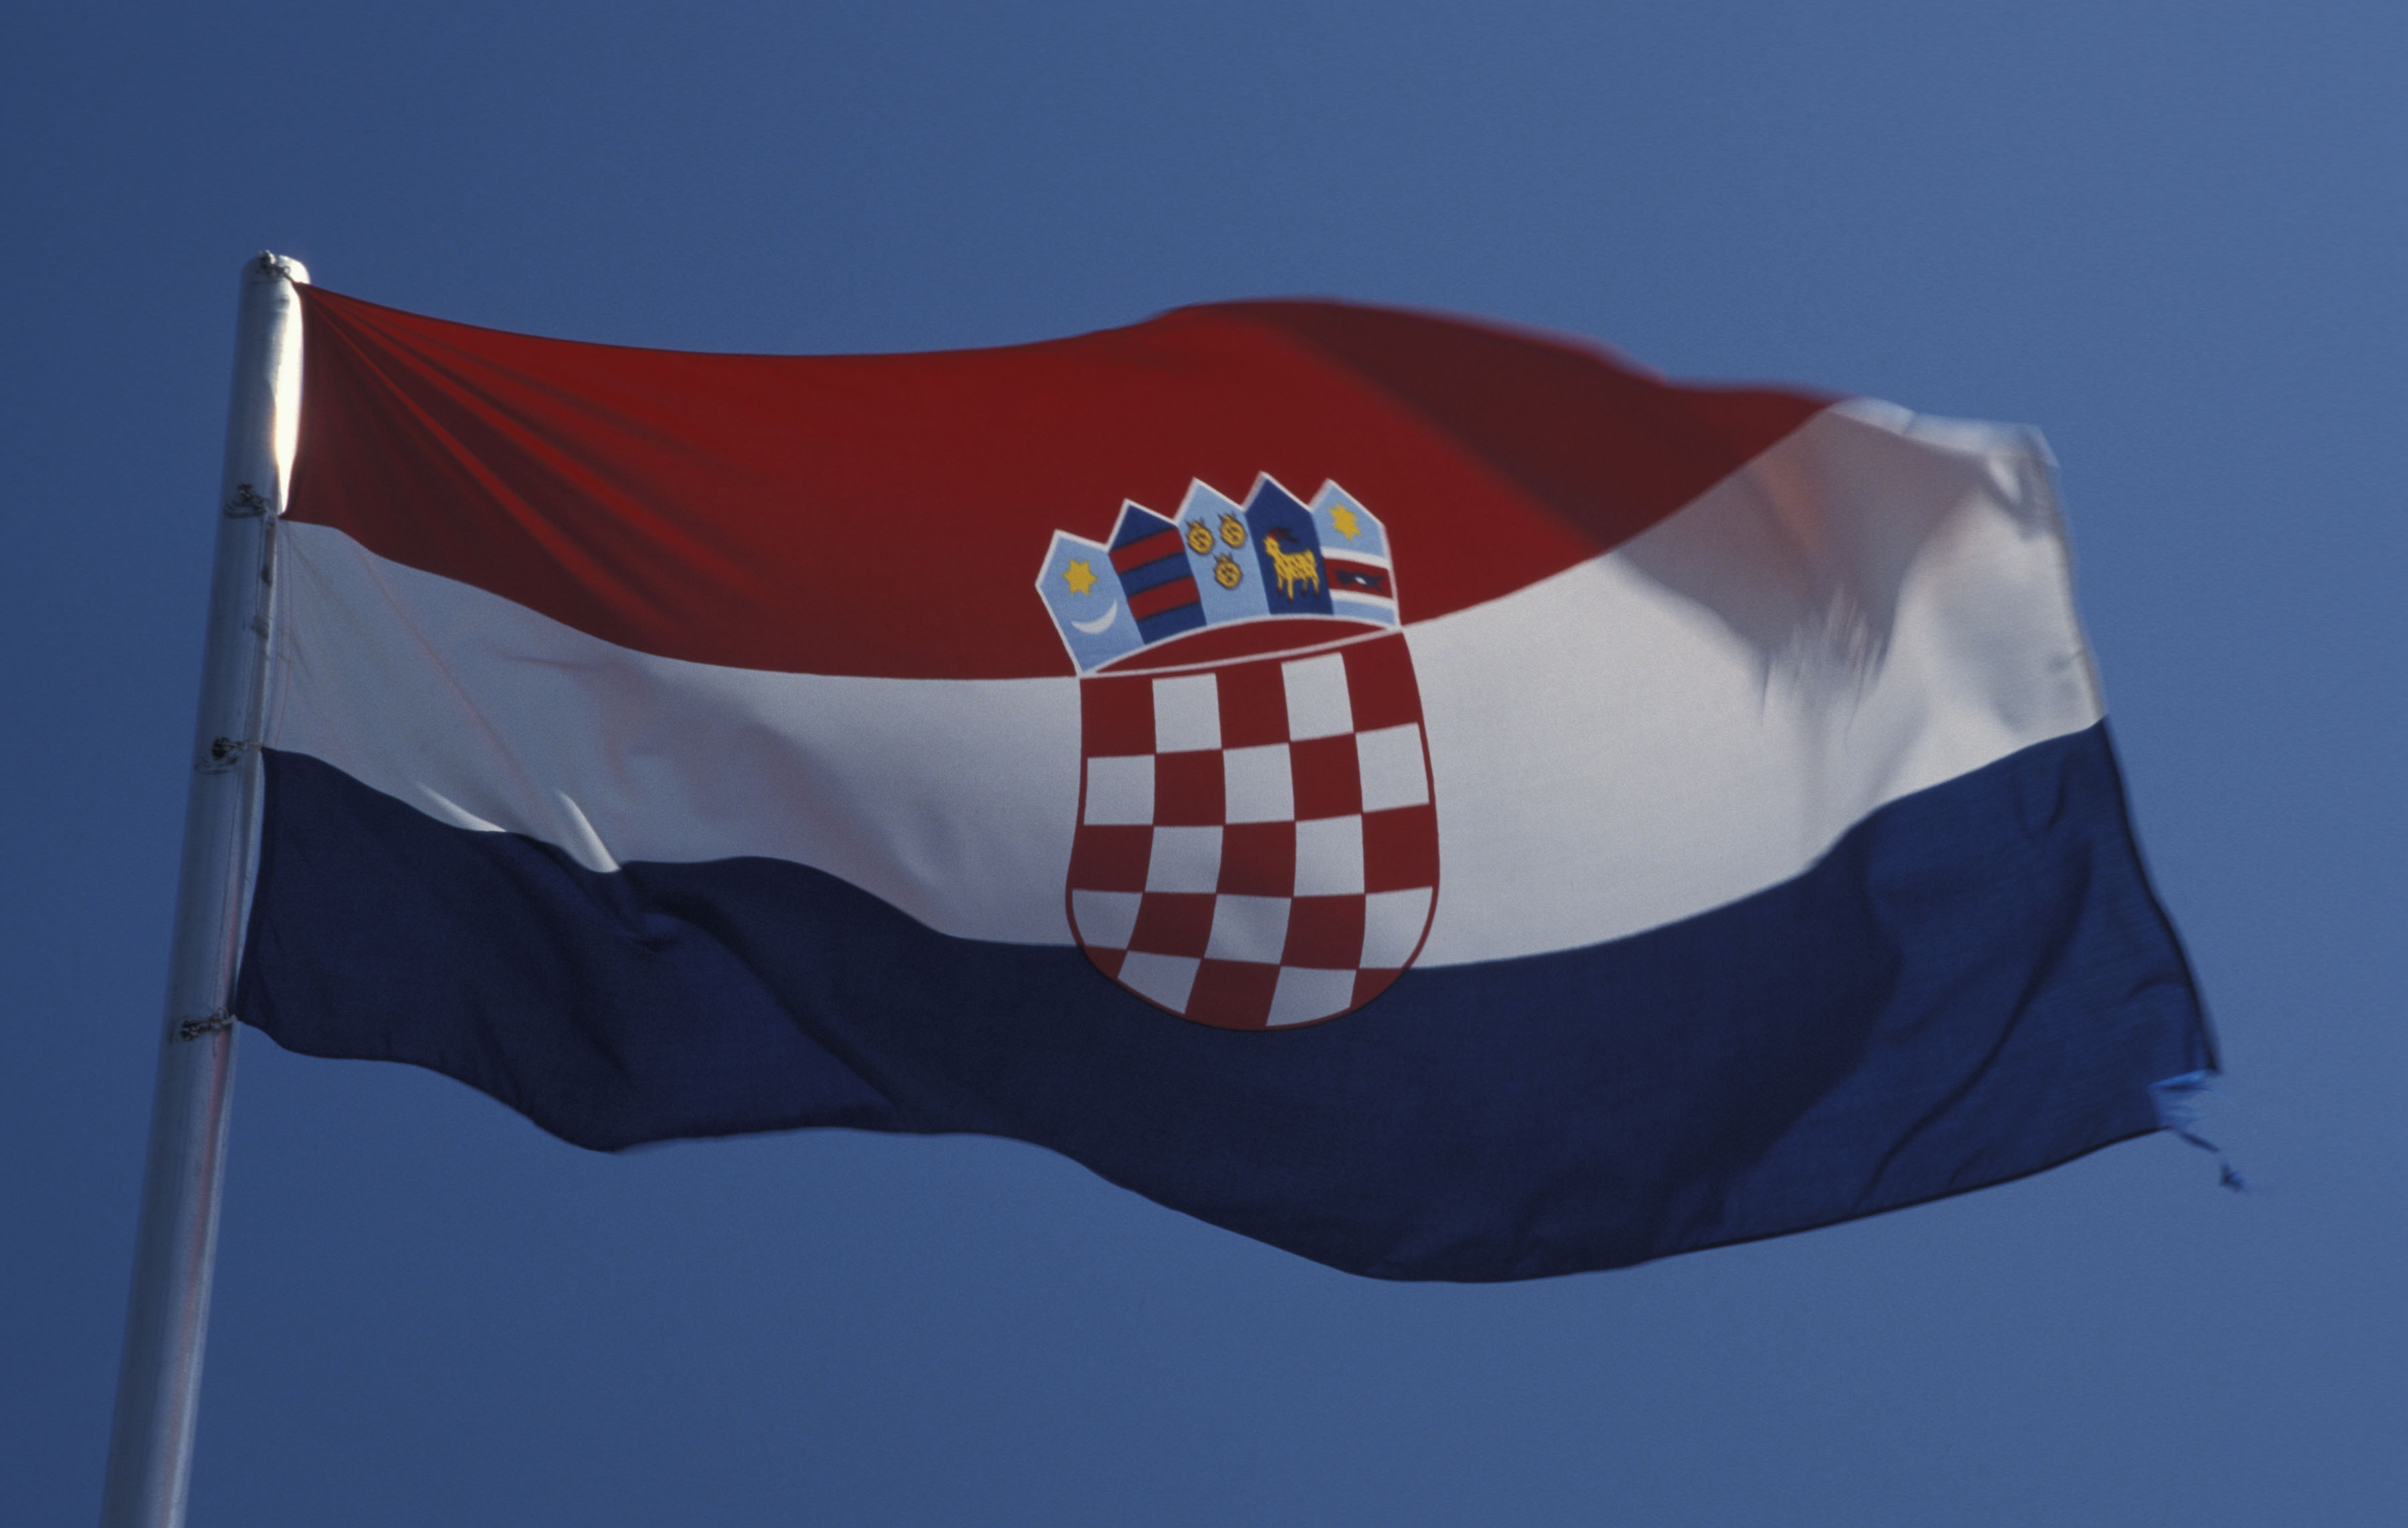 Horvátországi január elsején csatlakozik az euróövezethez és schengeni térséghez